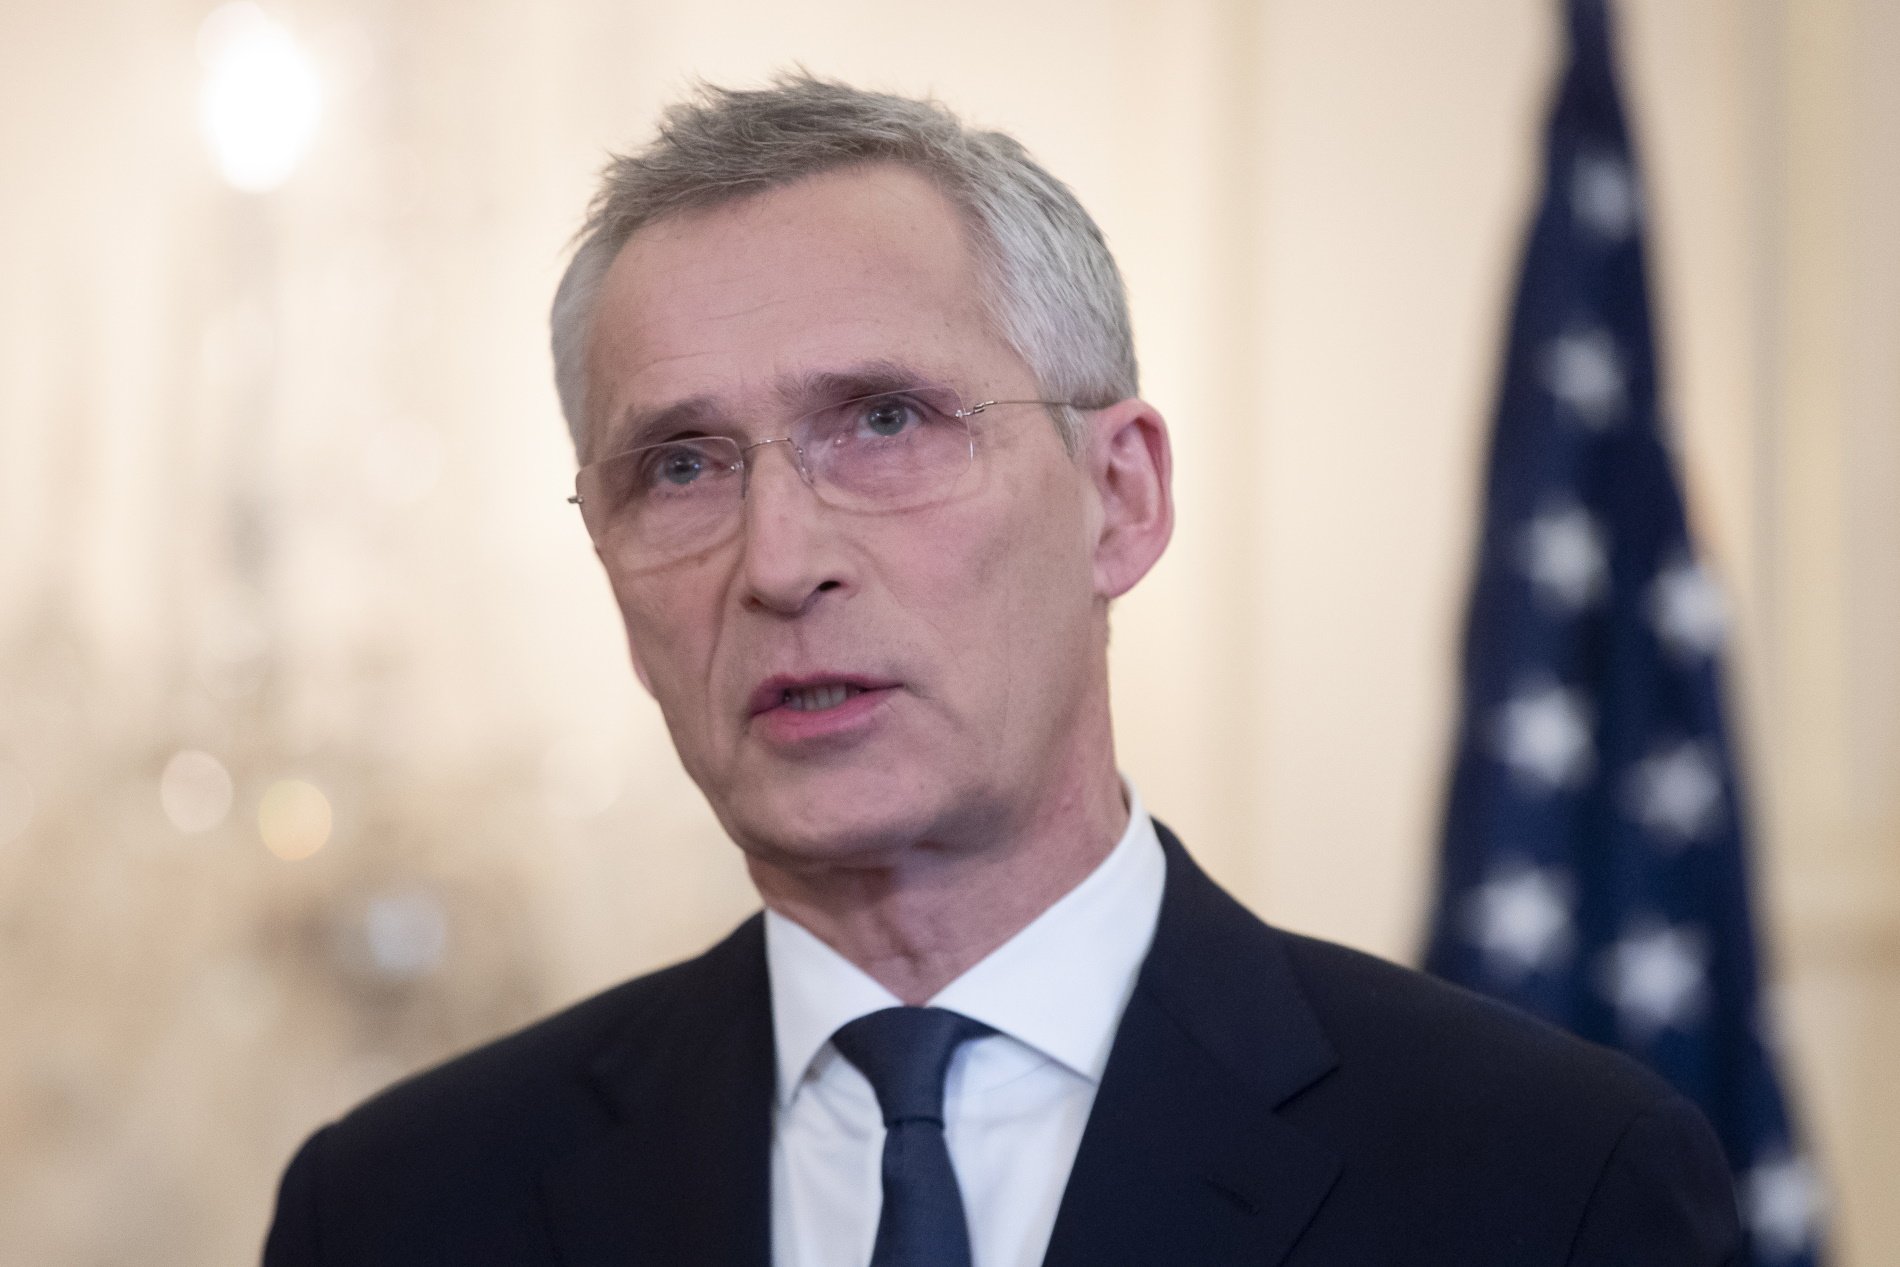 Es busca nou líder de l'OTAN: Jens Stoltenberg no renovarà com a secretari general